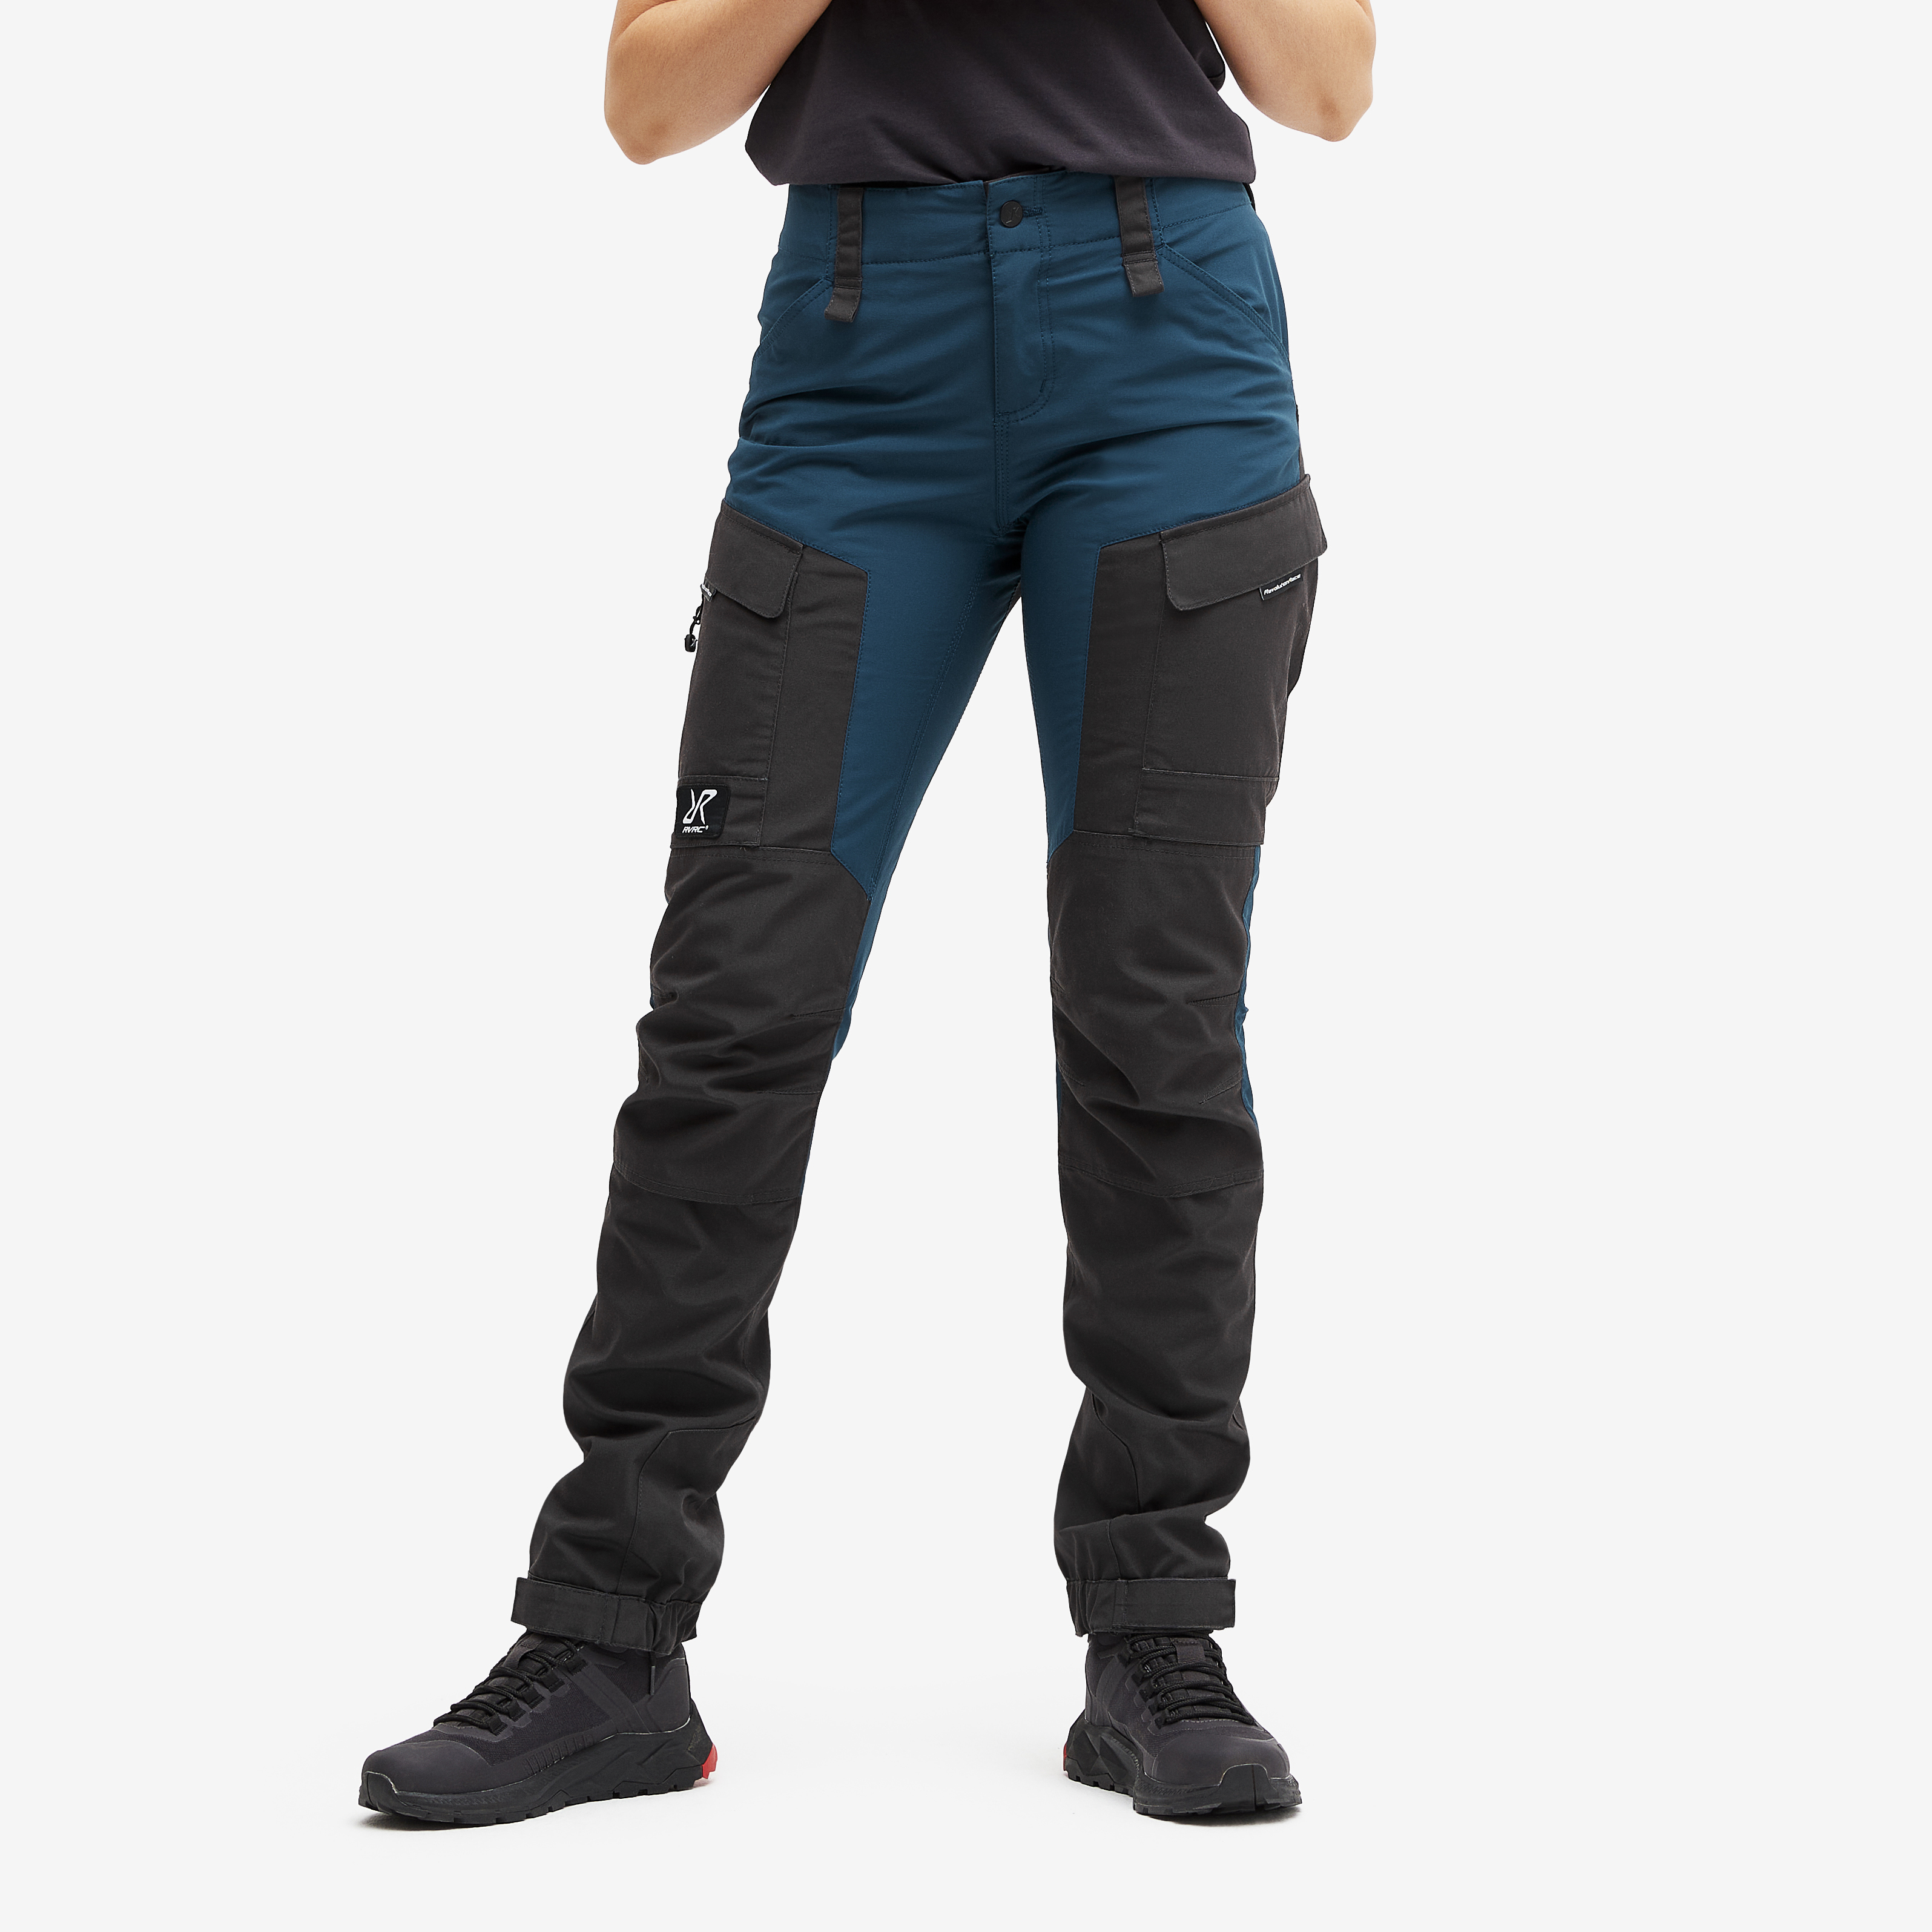 RVRC GP outdoor pants for women in dark blue